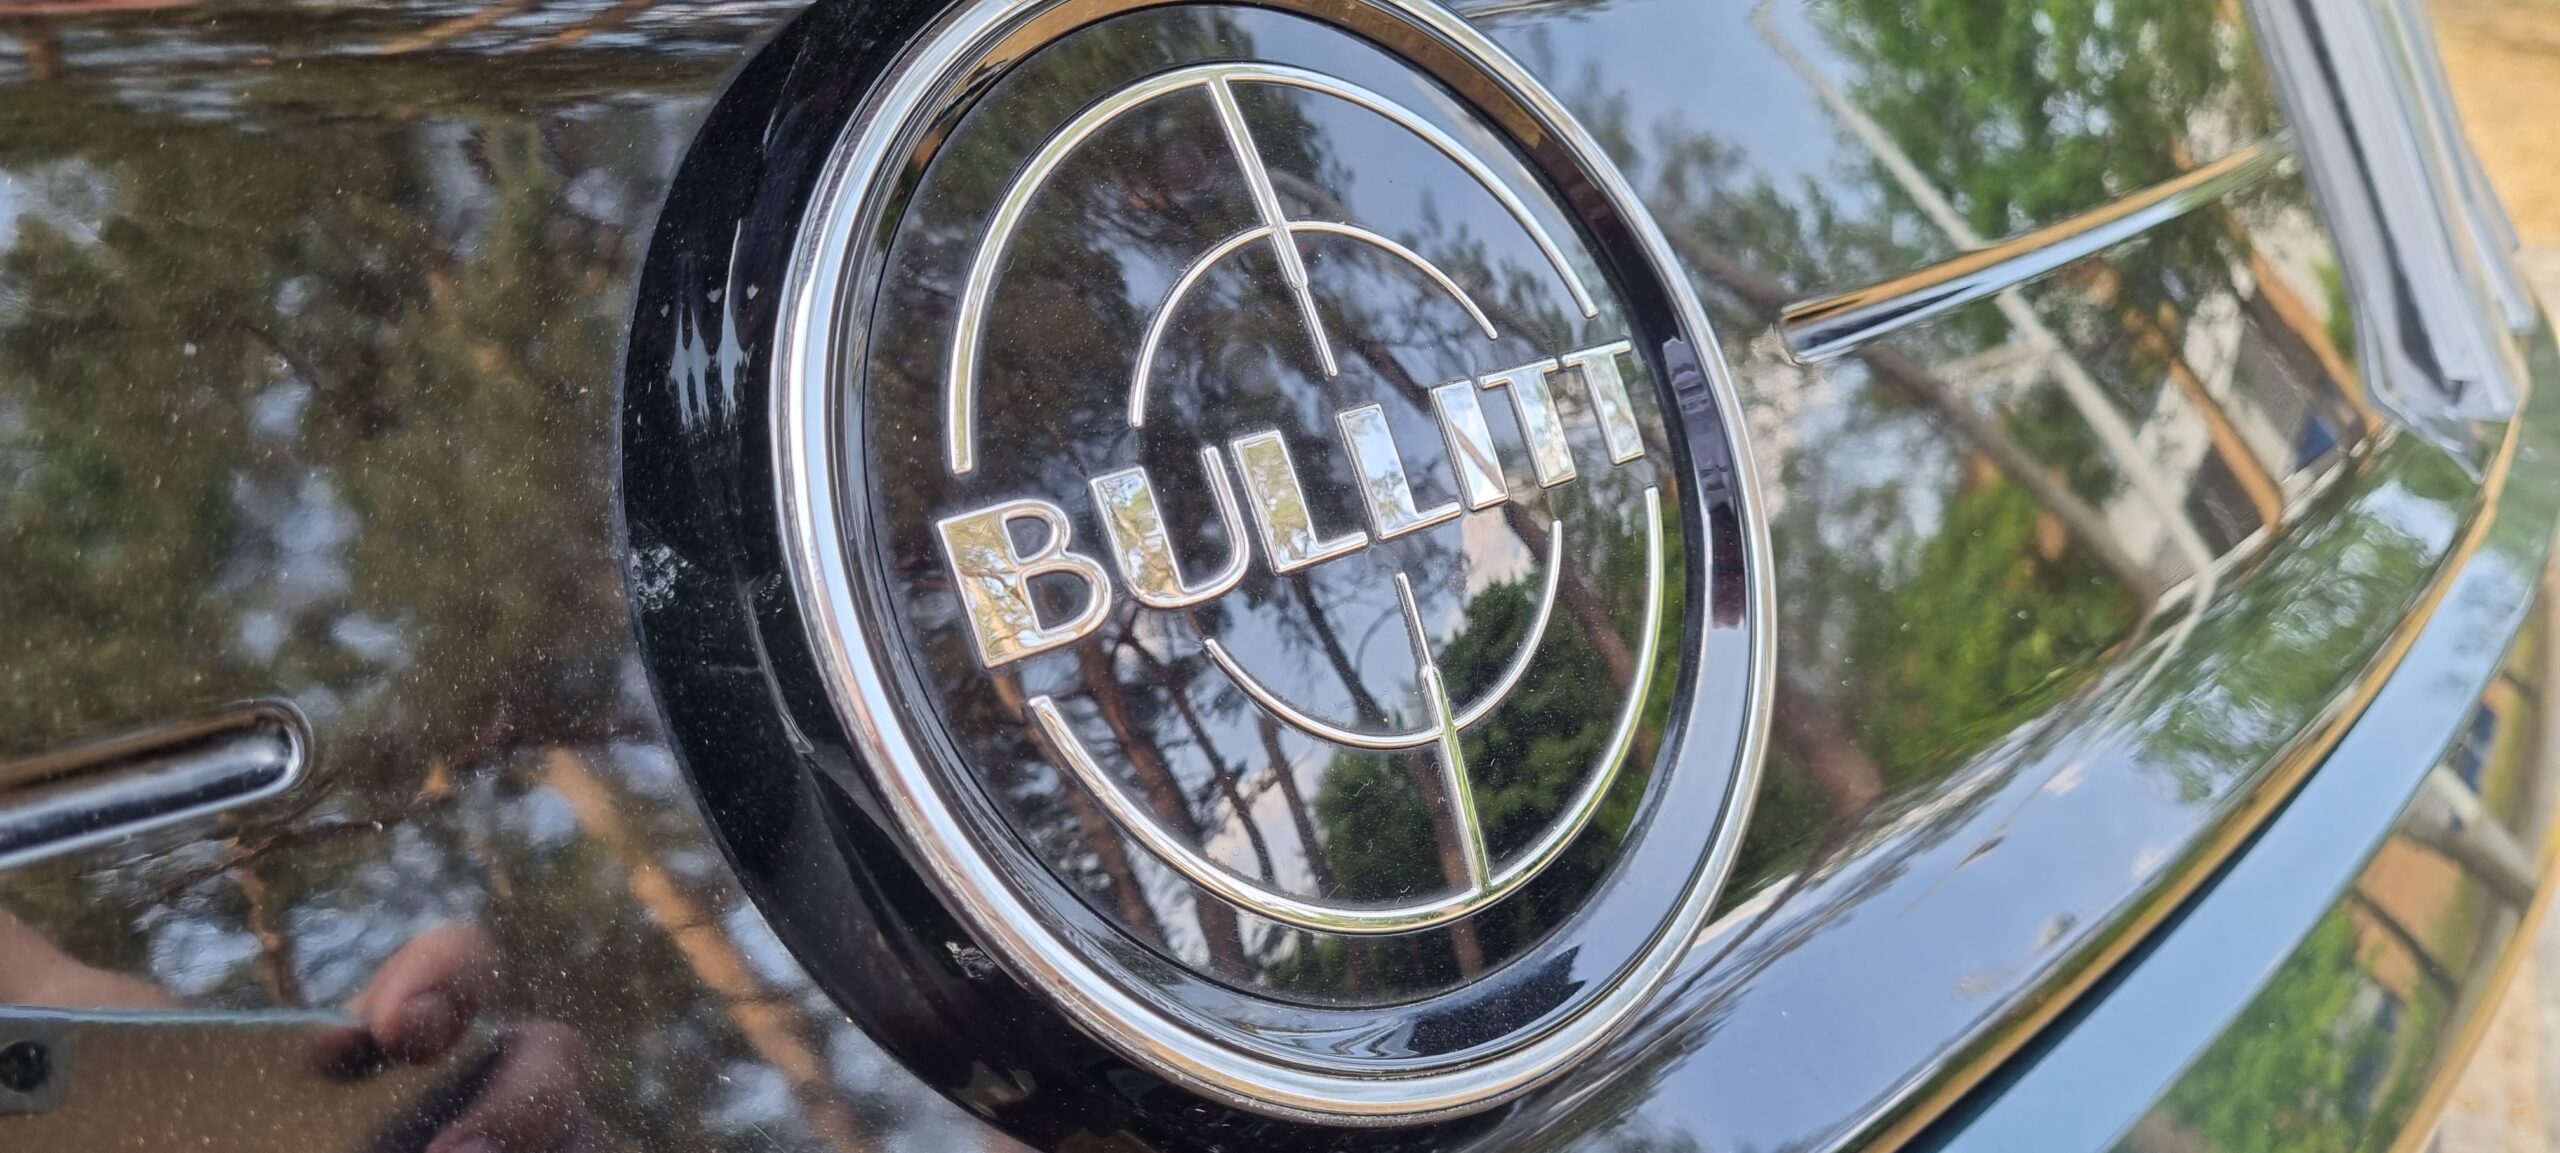 Green 2019 Ford Mustang Bullitt Logo